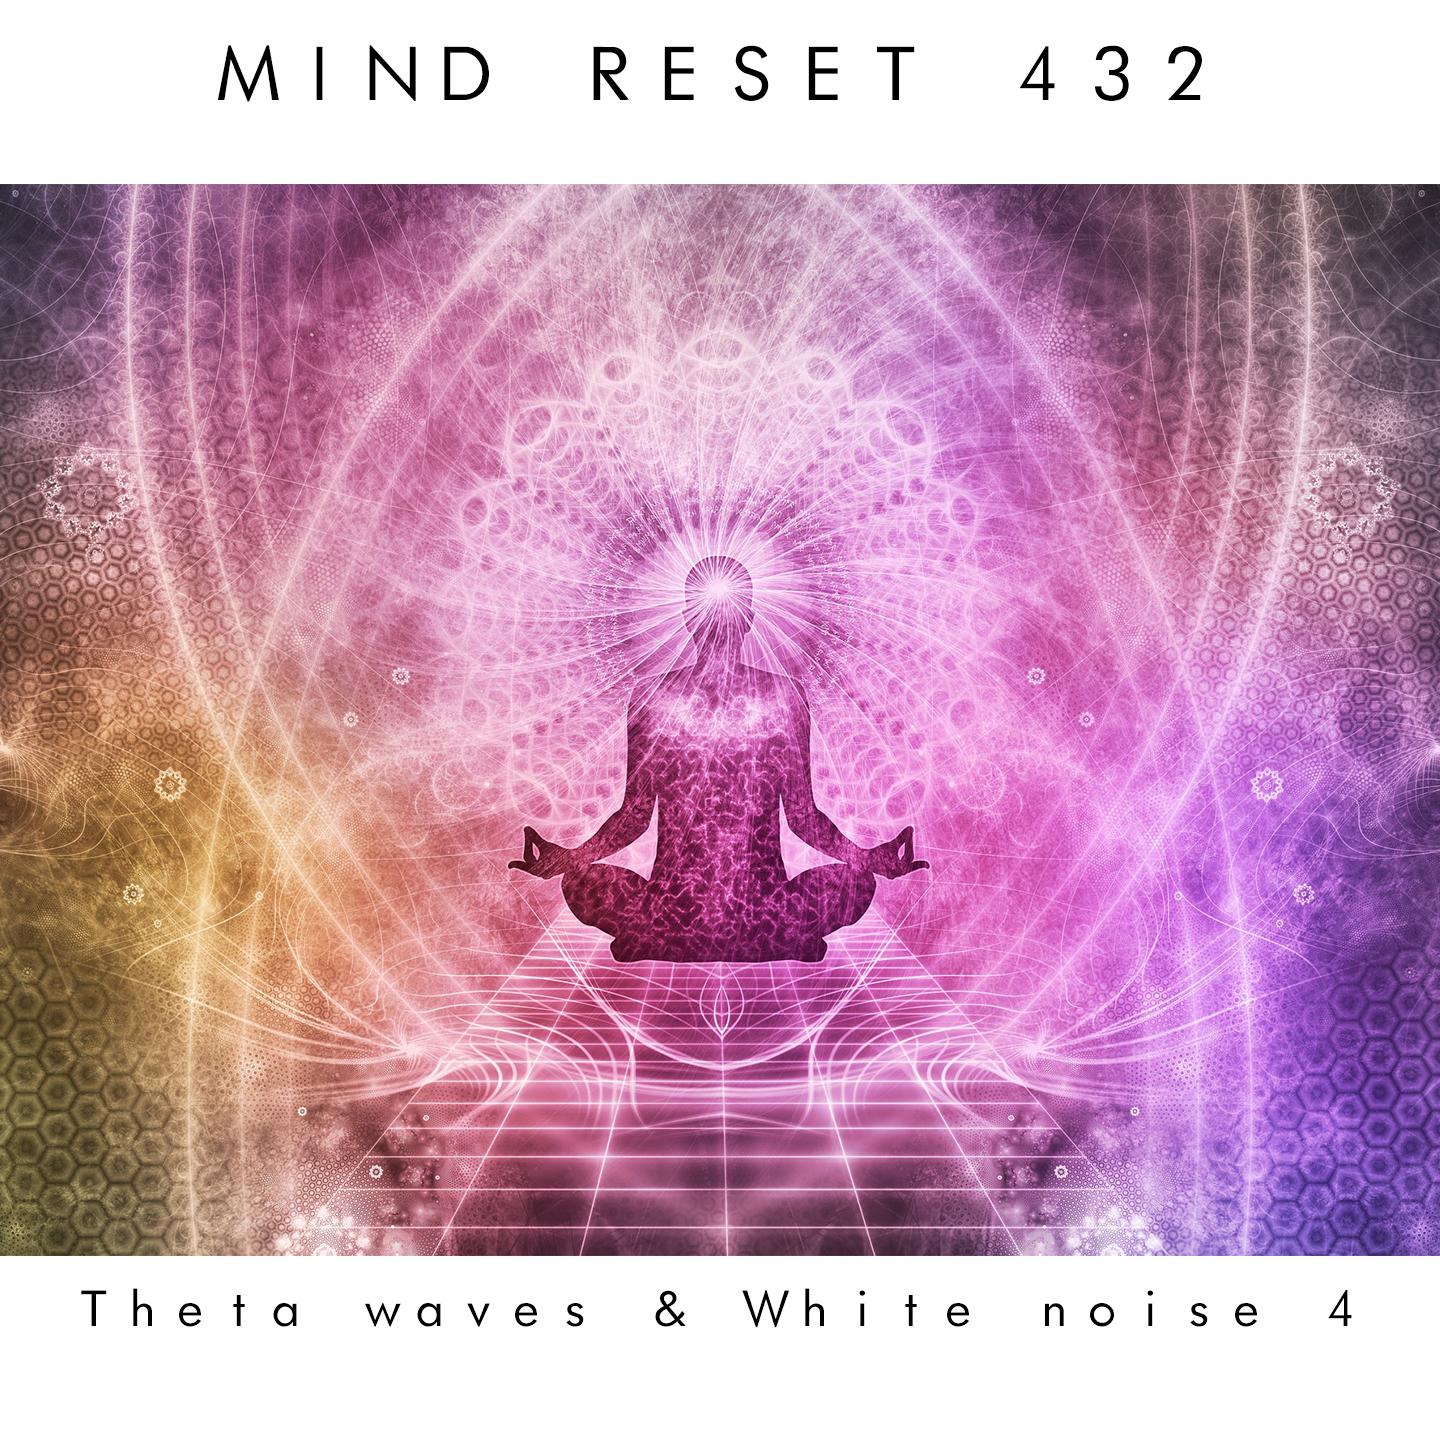 Theta waves & white noise 4